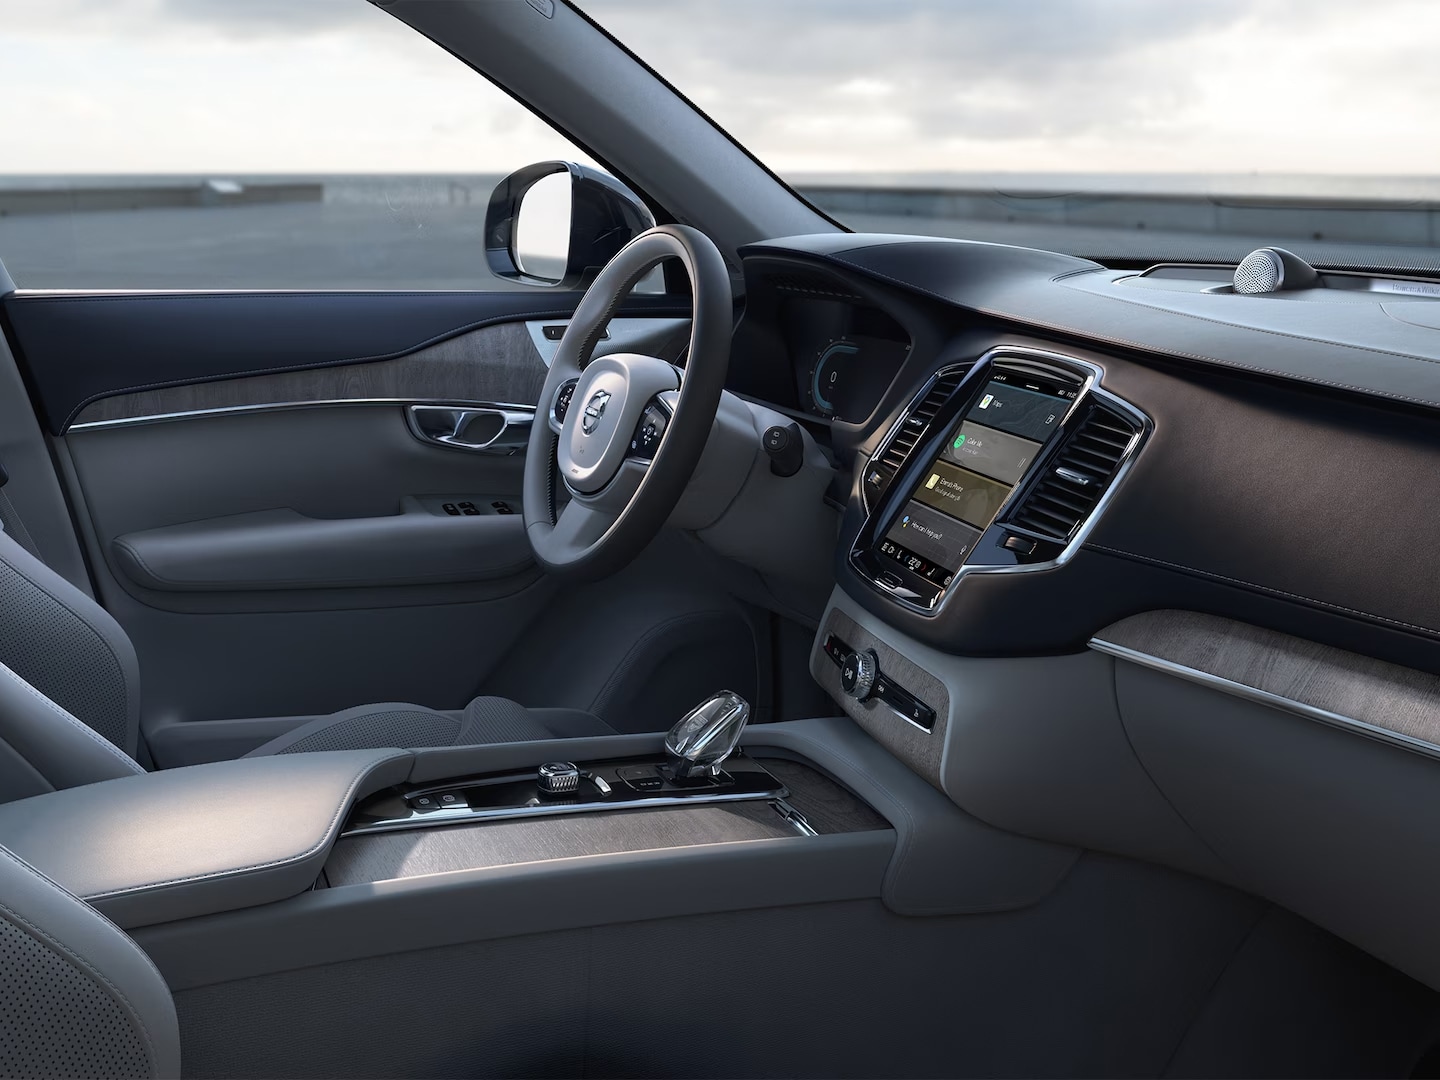 Asiento del conductor y revestimiento de las puertas en cuero napa, volante, consola central y pantalla táctil de infoentretenimiento en el XC90 semihíbrido.